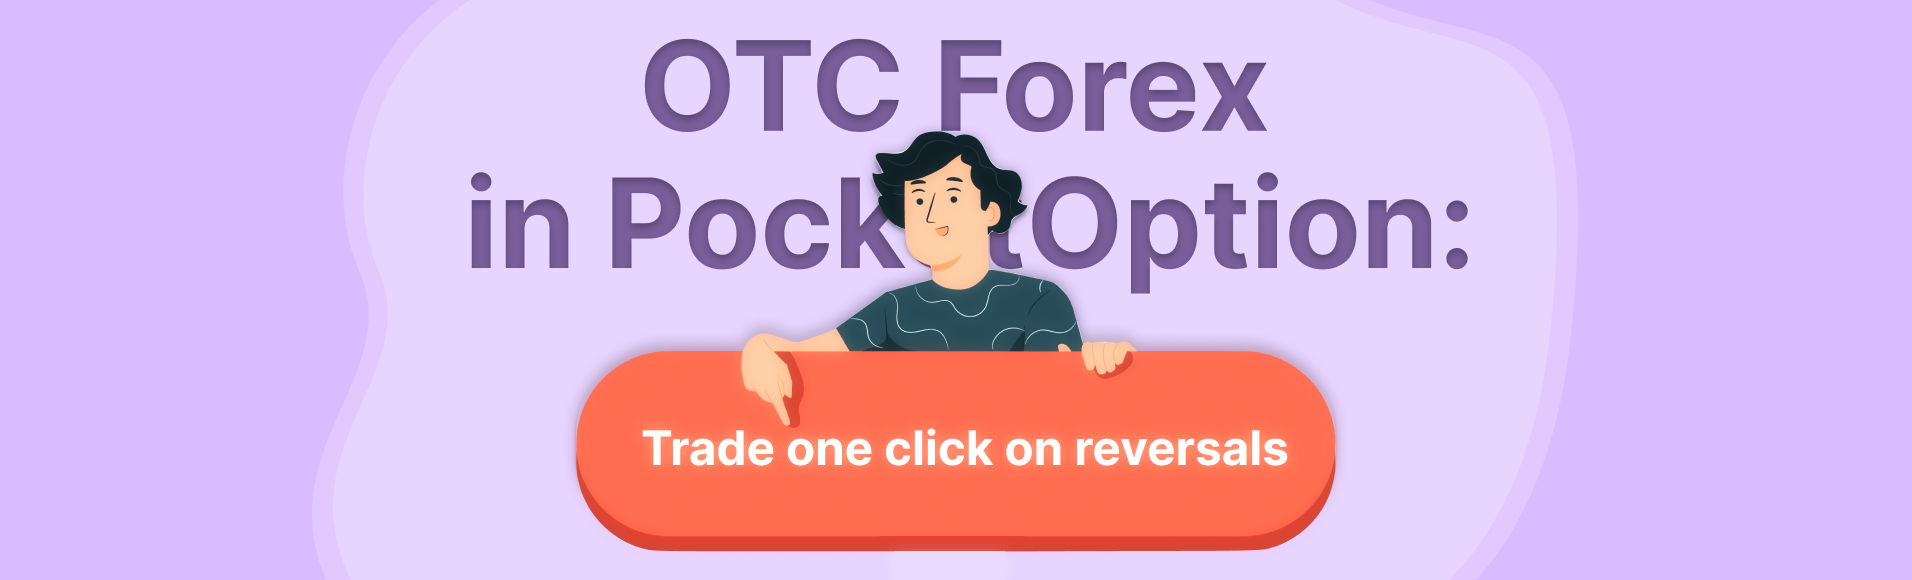 OTC Forex in PocketOption: negocie com um clique nas reversões